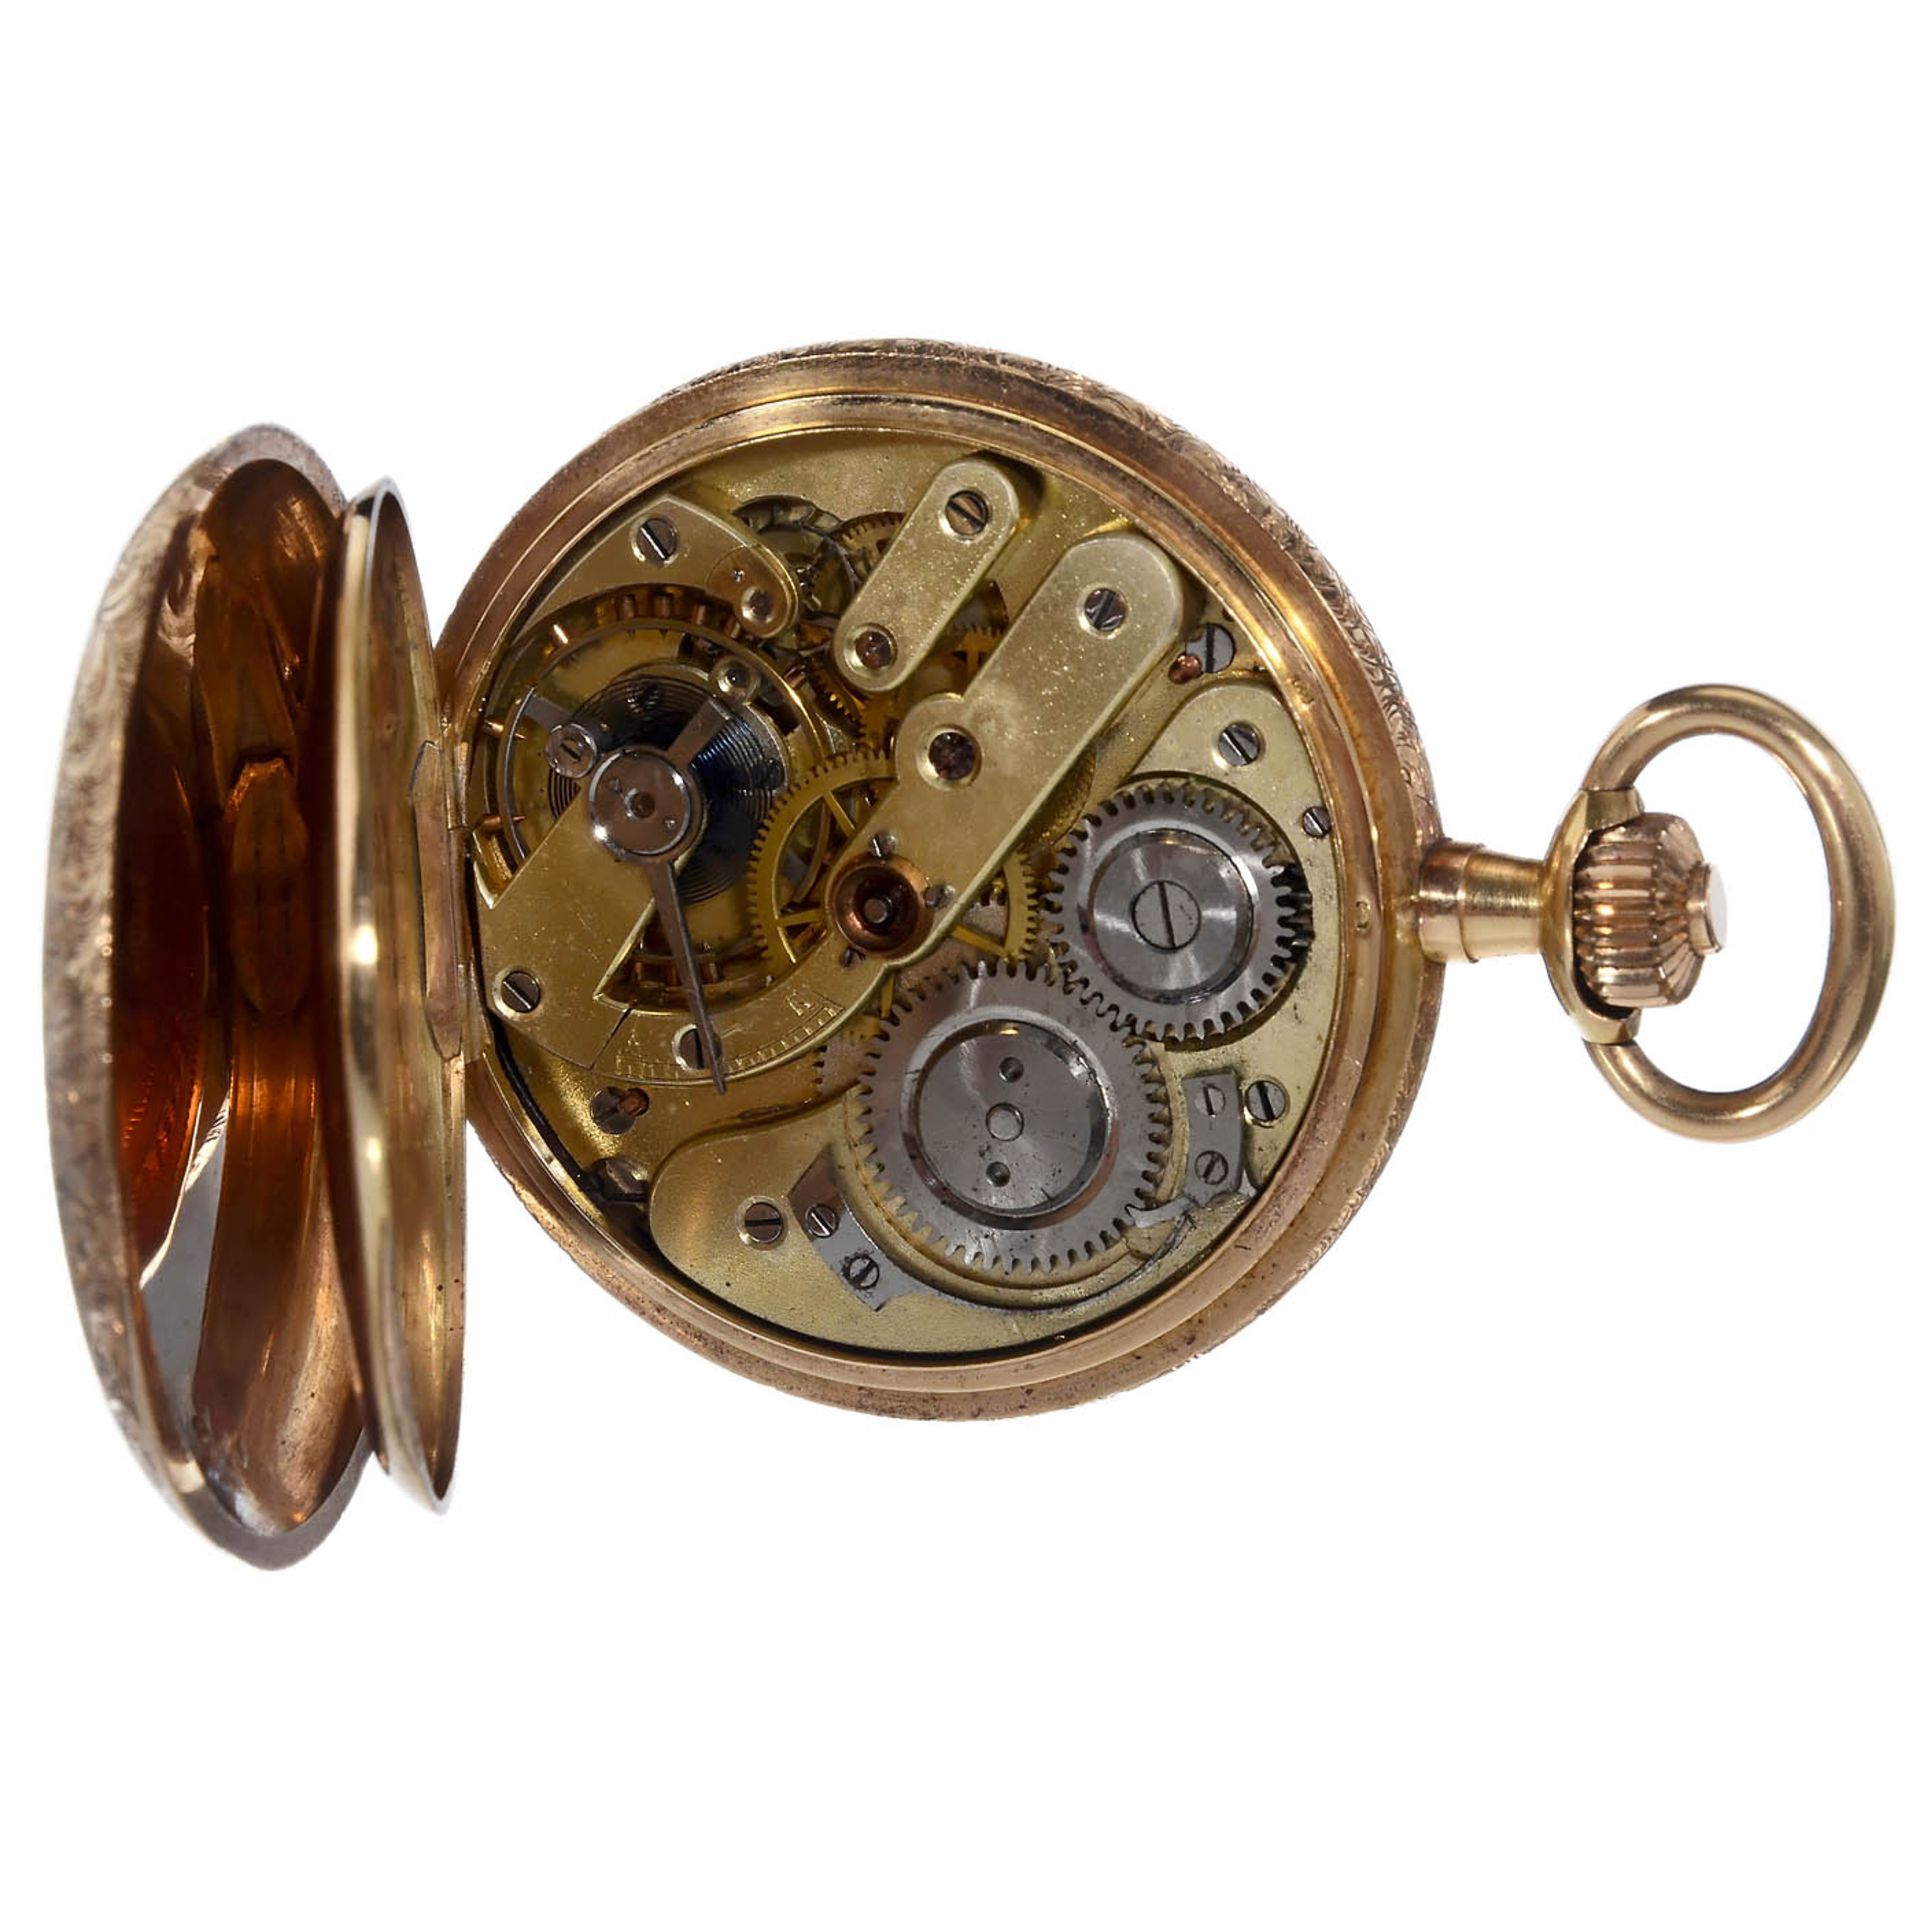 Goldene Taschenuhr (18 Karat) von Dubois, um 1885Genf, Schweiz. Nr. 72950, Sprungdeckel, - Bild 2 aus 6